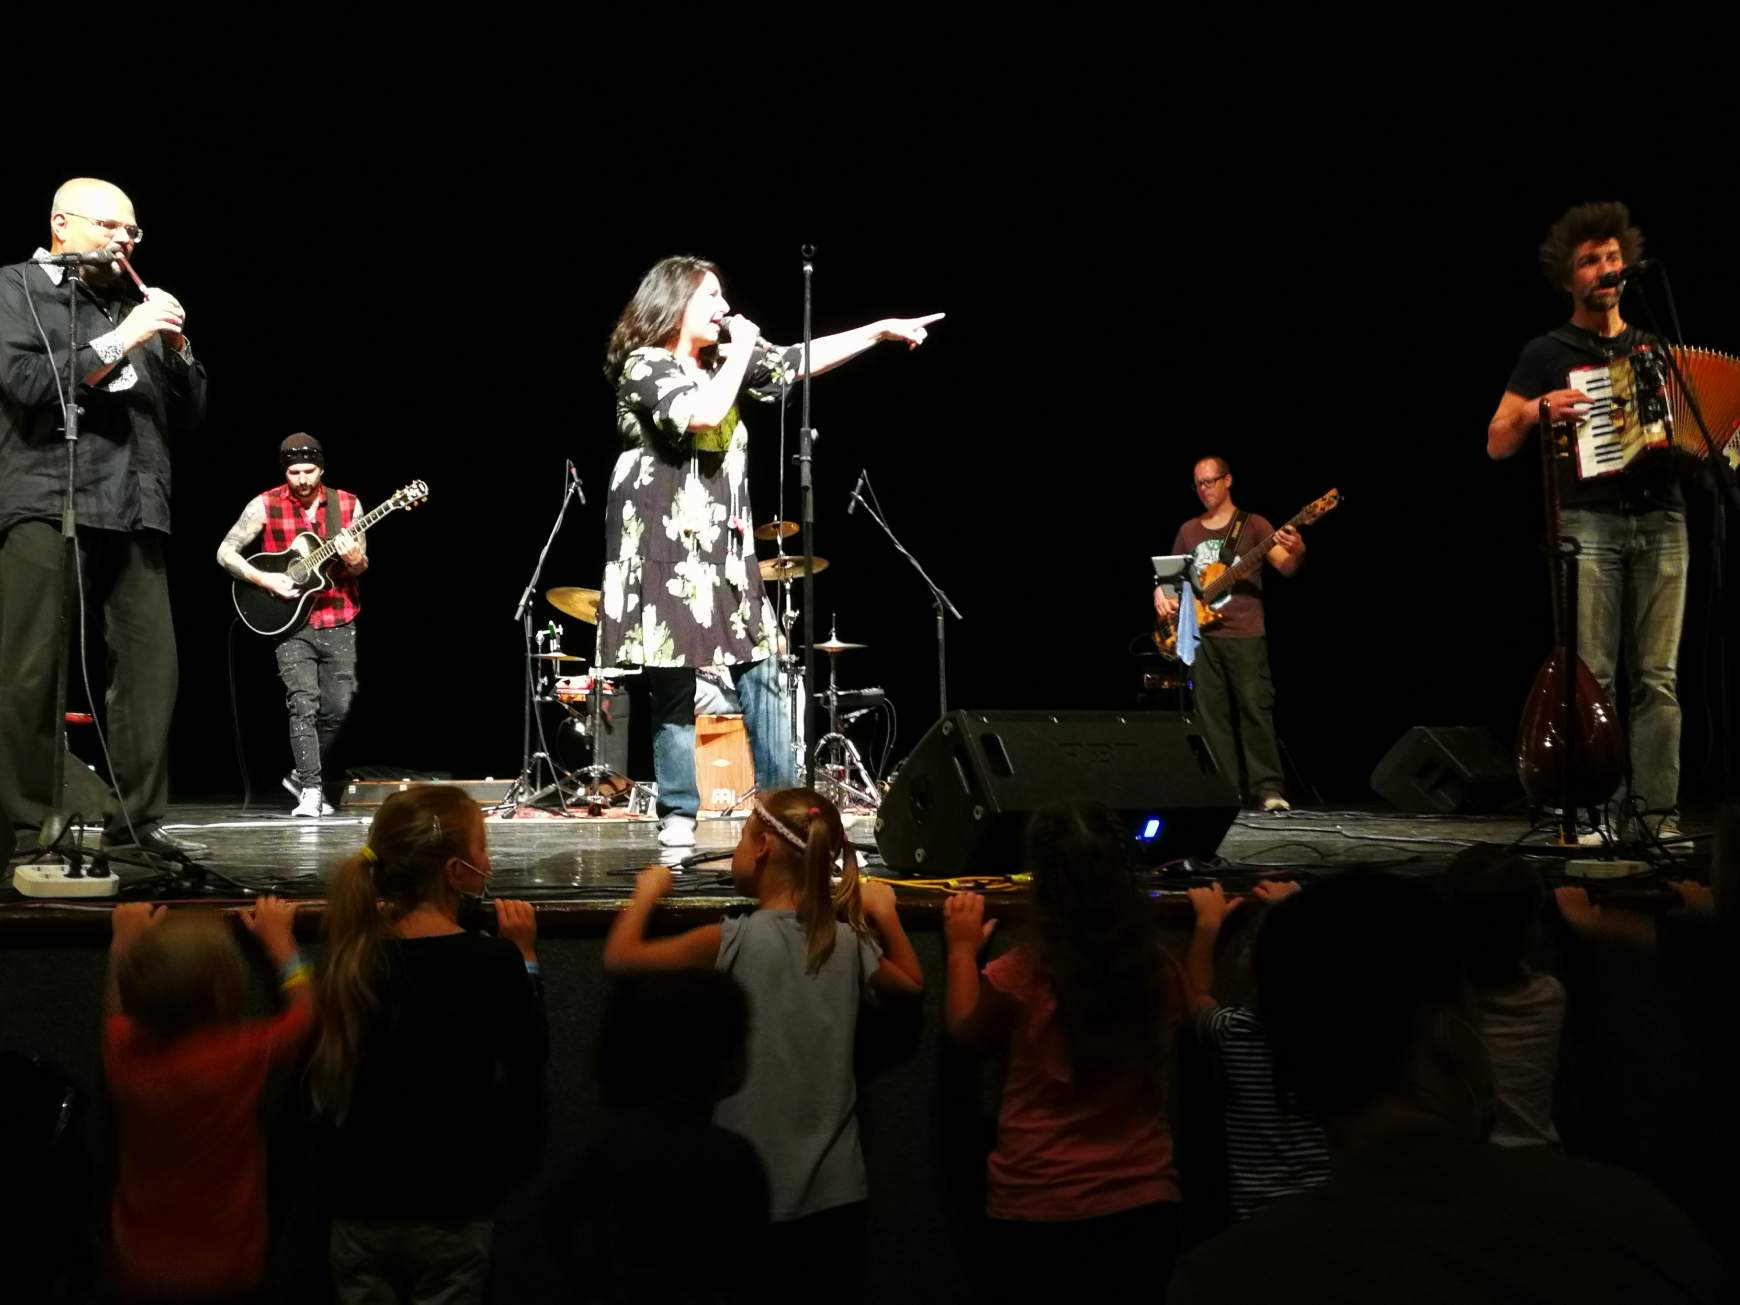 Sokakat vonzott a nagyszínpadon fellépő, magyarországi Veronaki együttes fülbemászó muzsikája